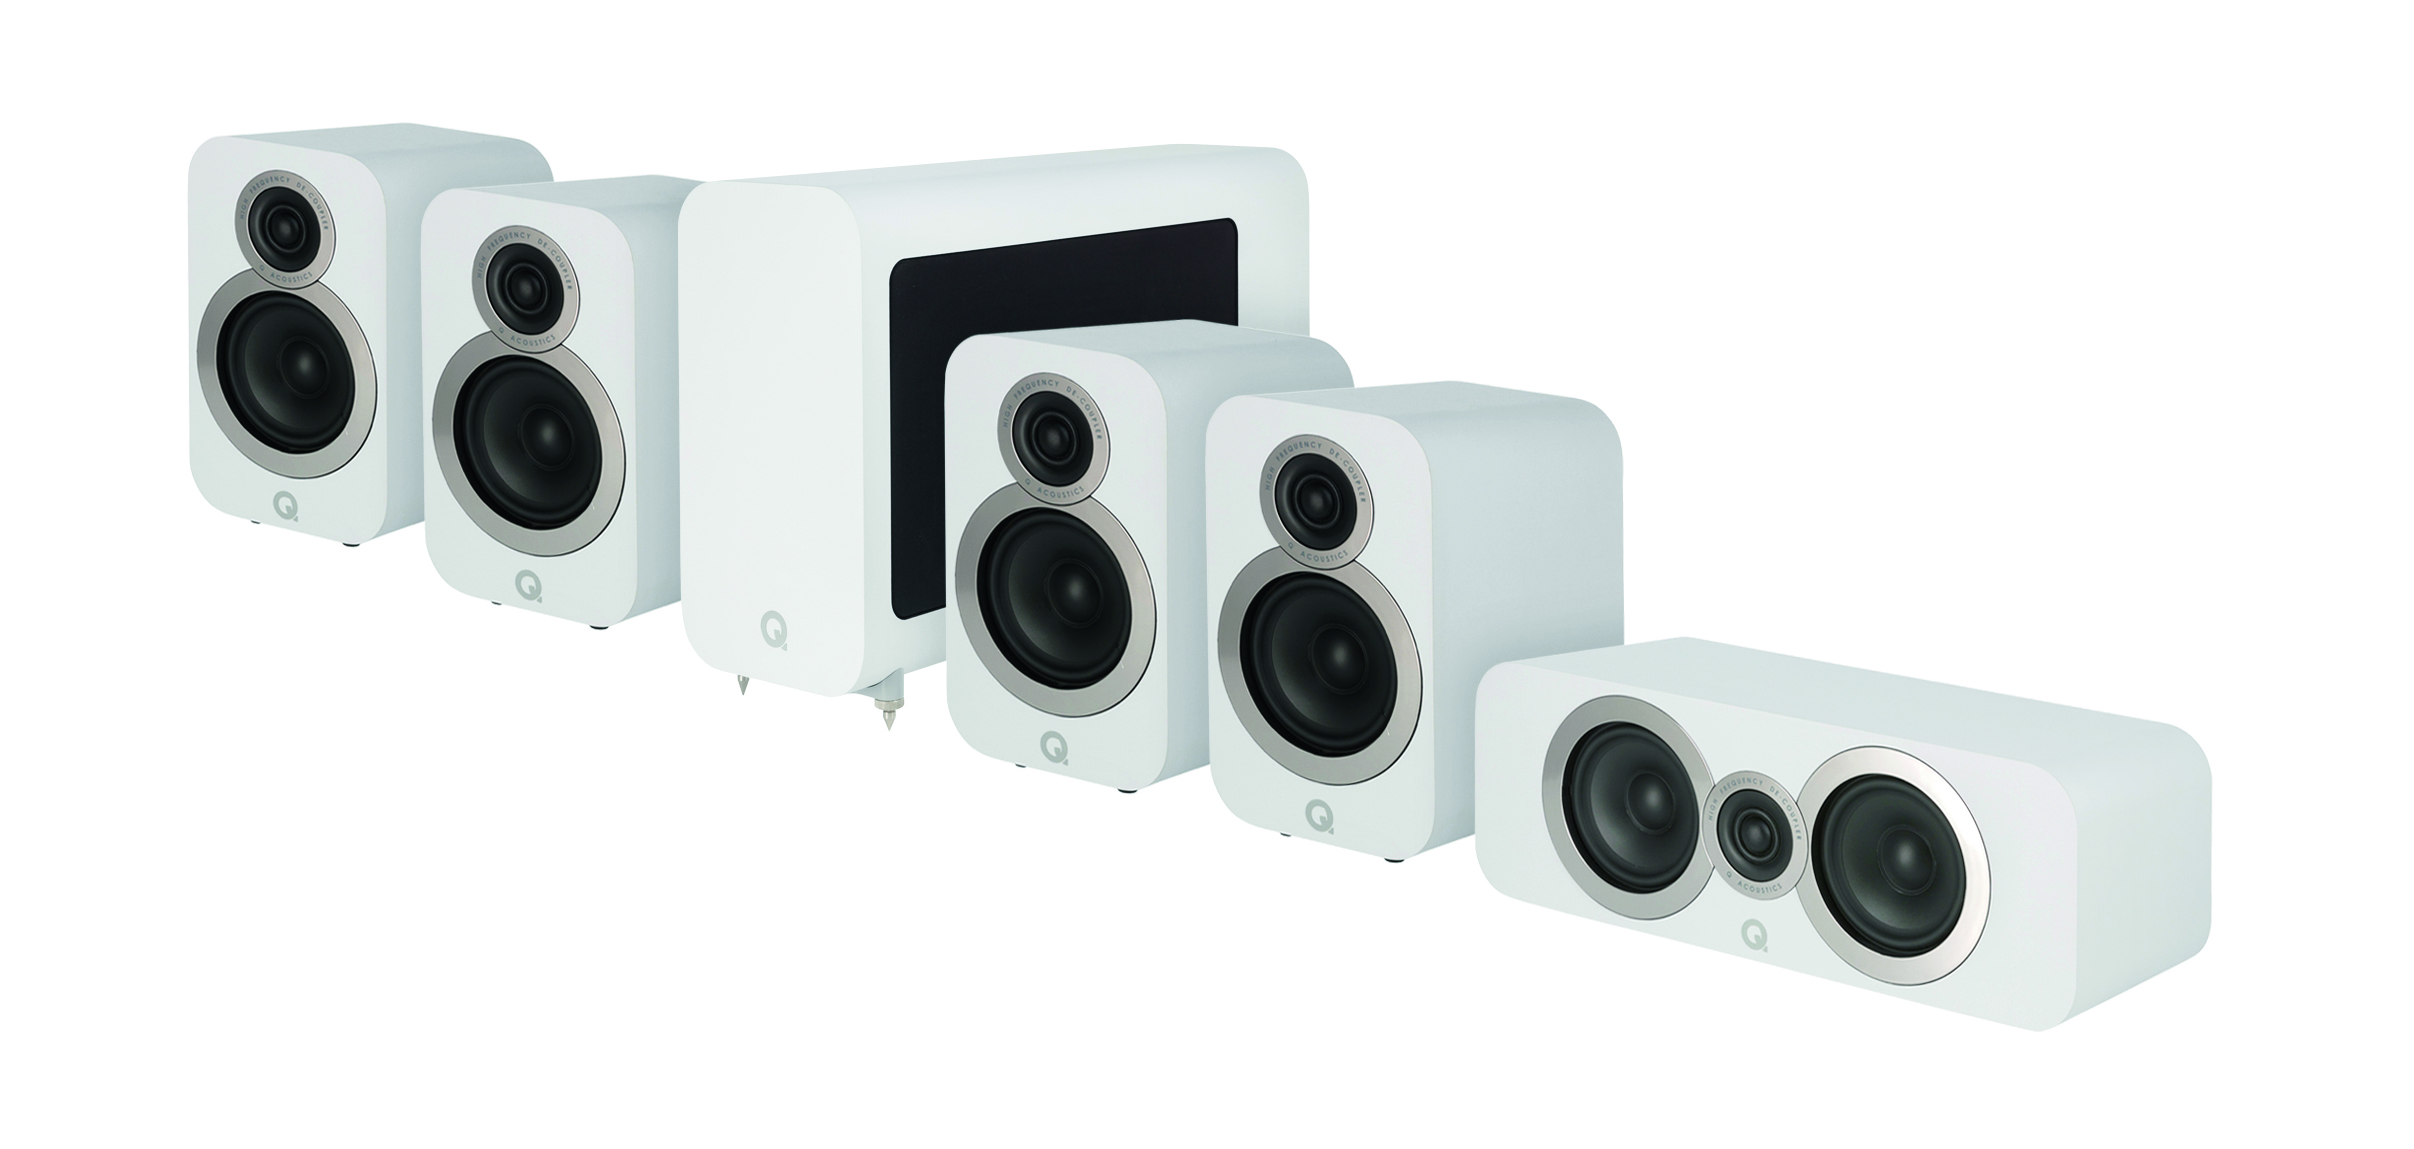 Man kan välja mellan två ”hemmabiopaket” med fem högtalare och subwoofer. Foto: Q Acoustics